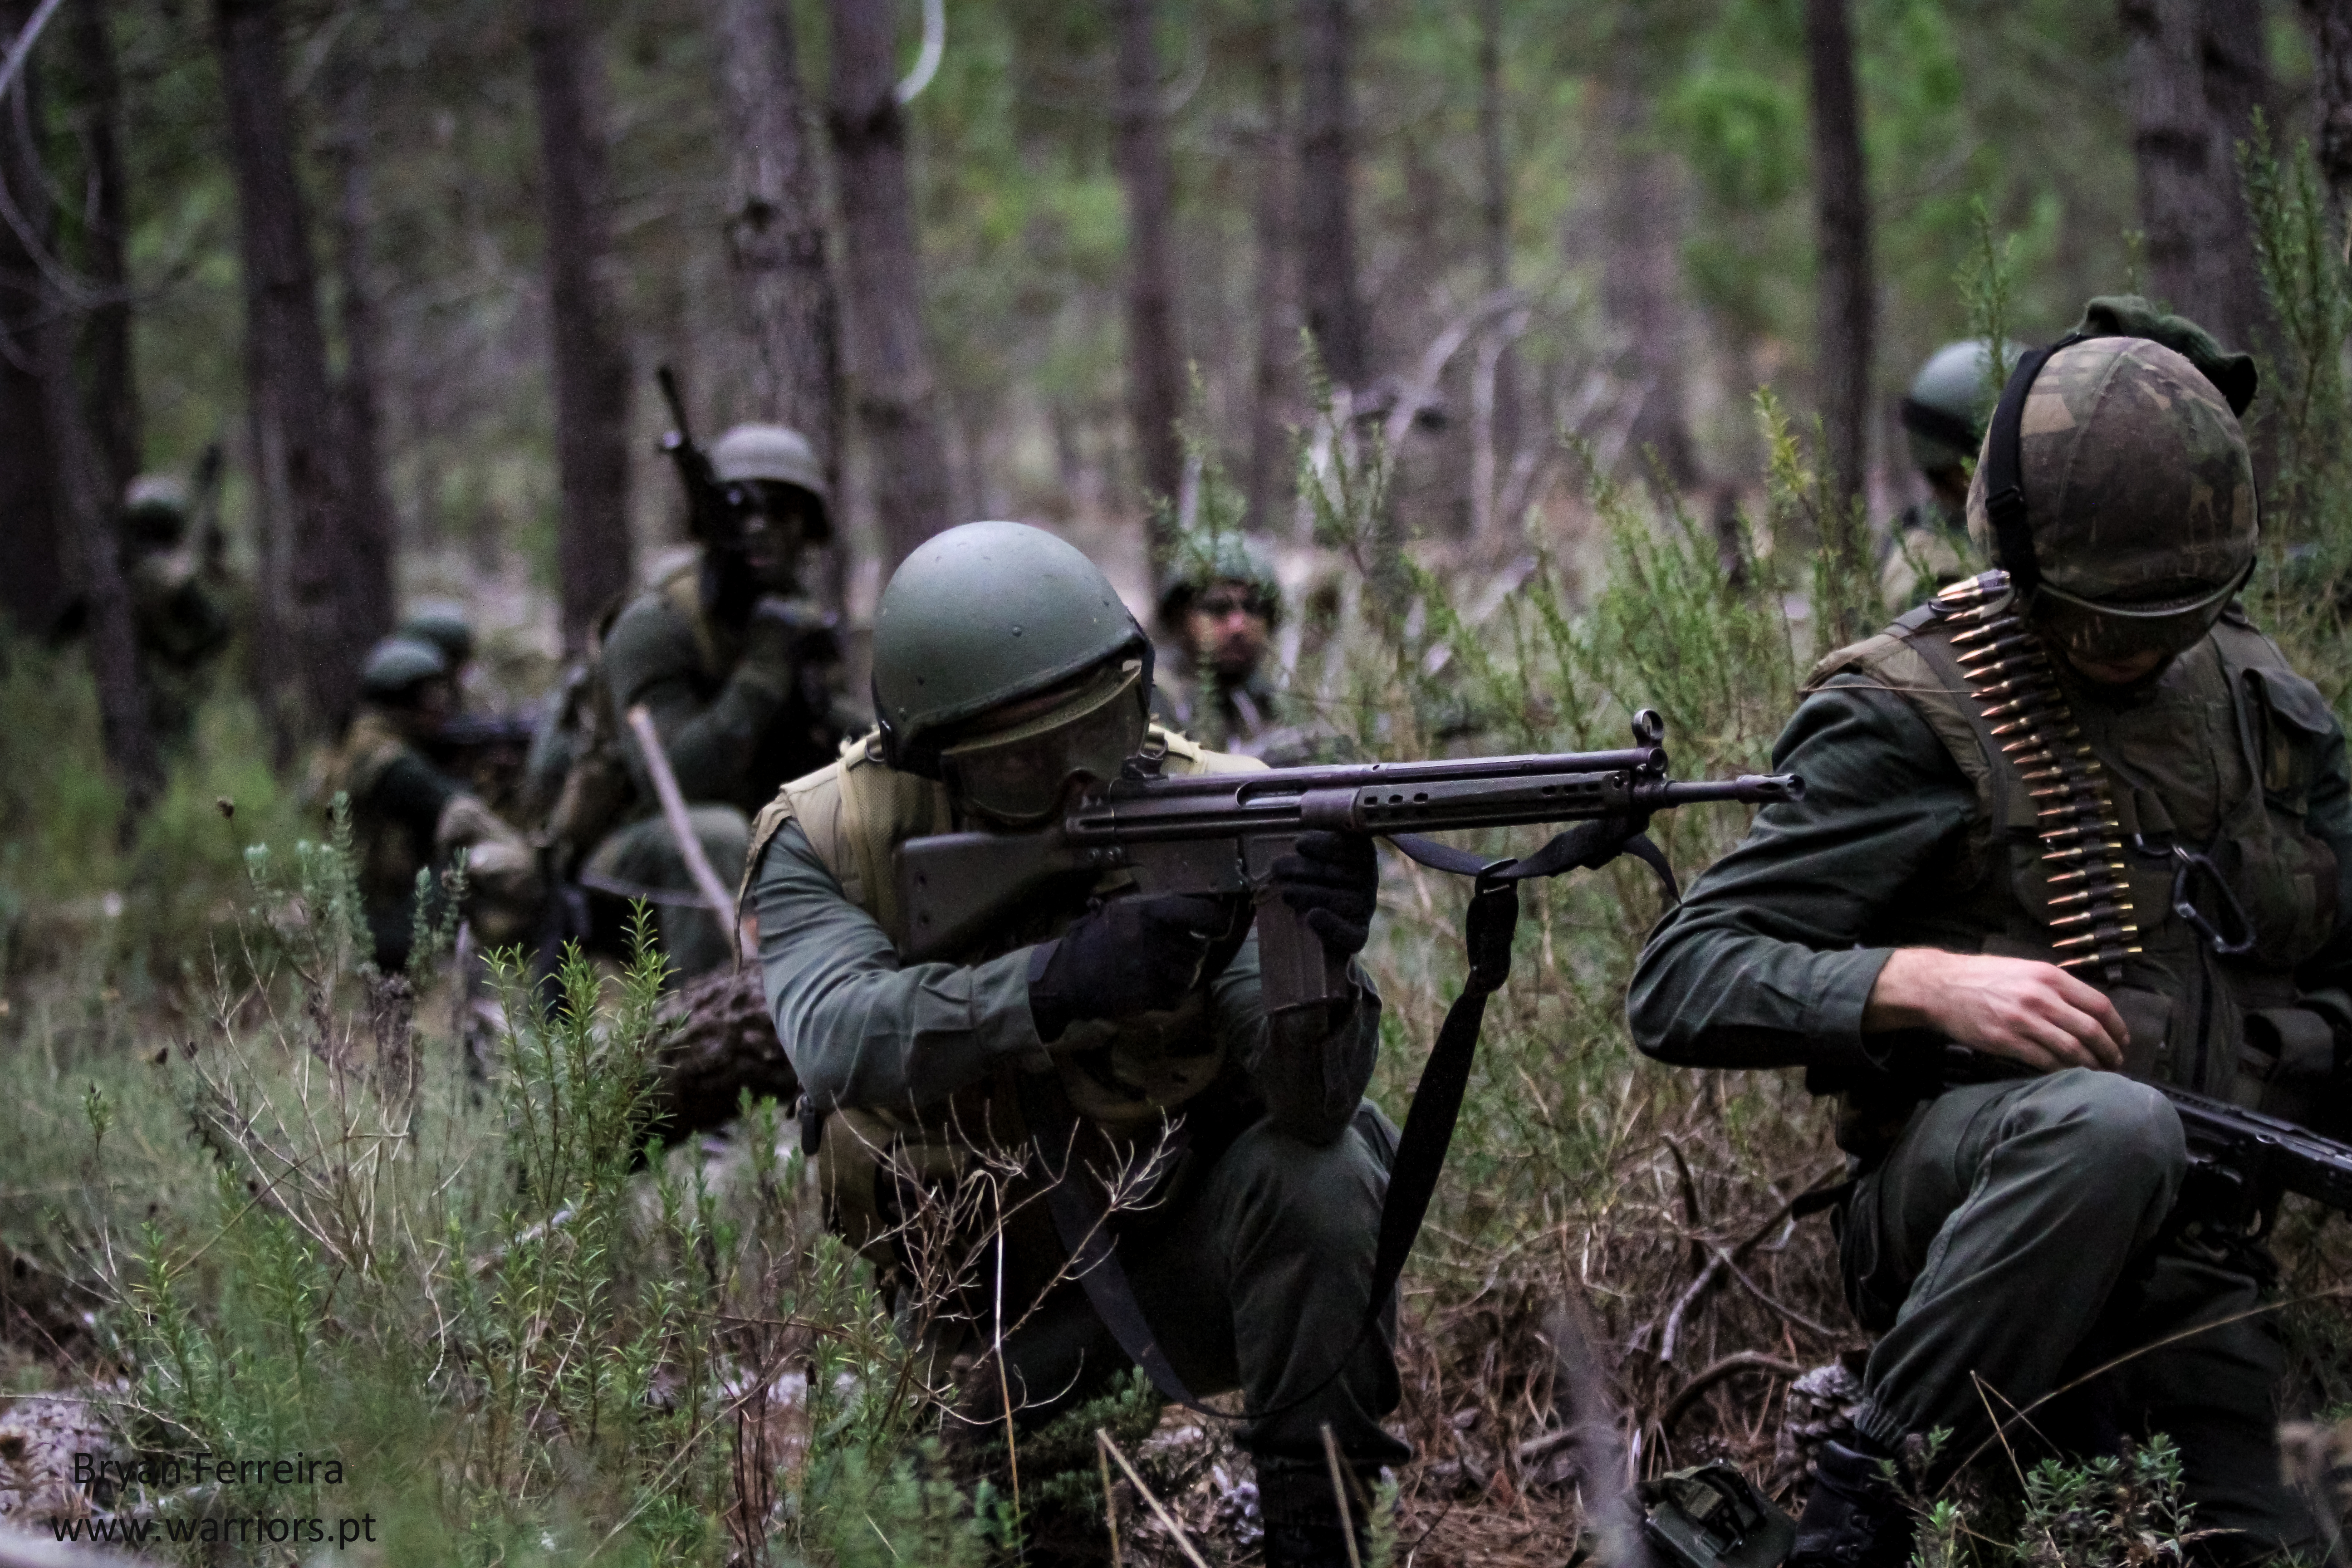 Fuzileiros Portugueses executam manobras de contacto. Estão equipados com espingardas automáticas G3, metralhadoras Mg3 e Lança-Granadas HK79